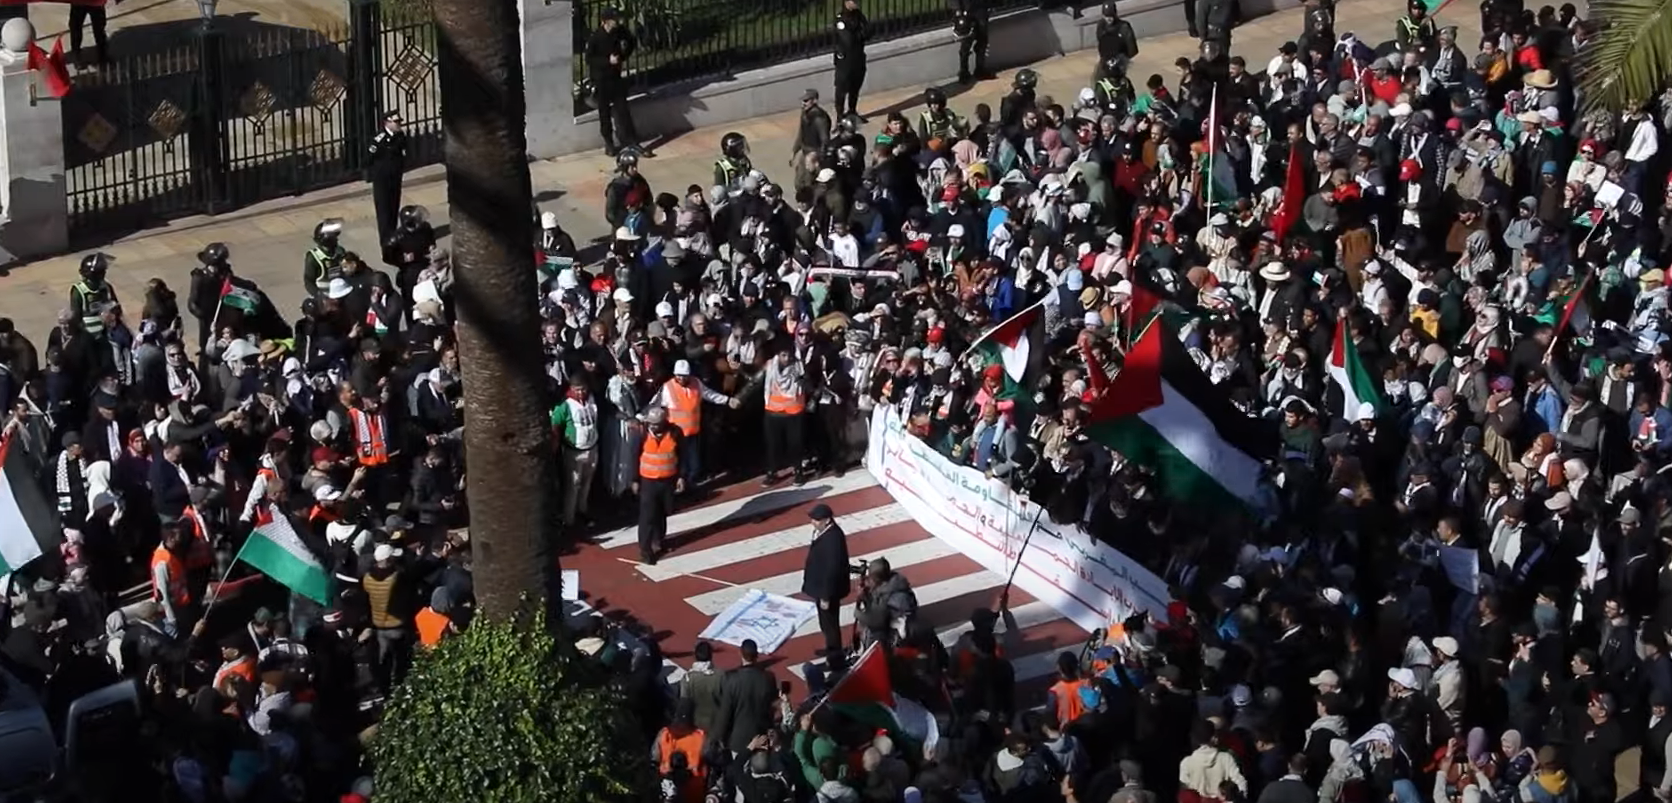 "الشعب يريد إنهاء التطبيع".. المغاربة يهزون شوارع الرباط ويحرقون علم إسرائيل